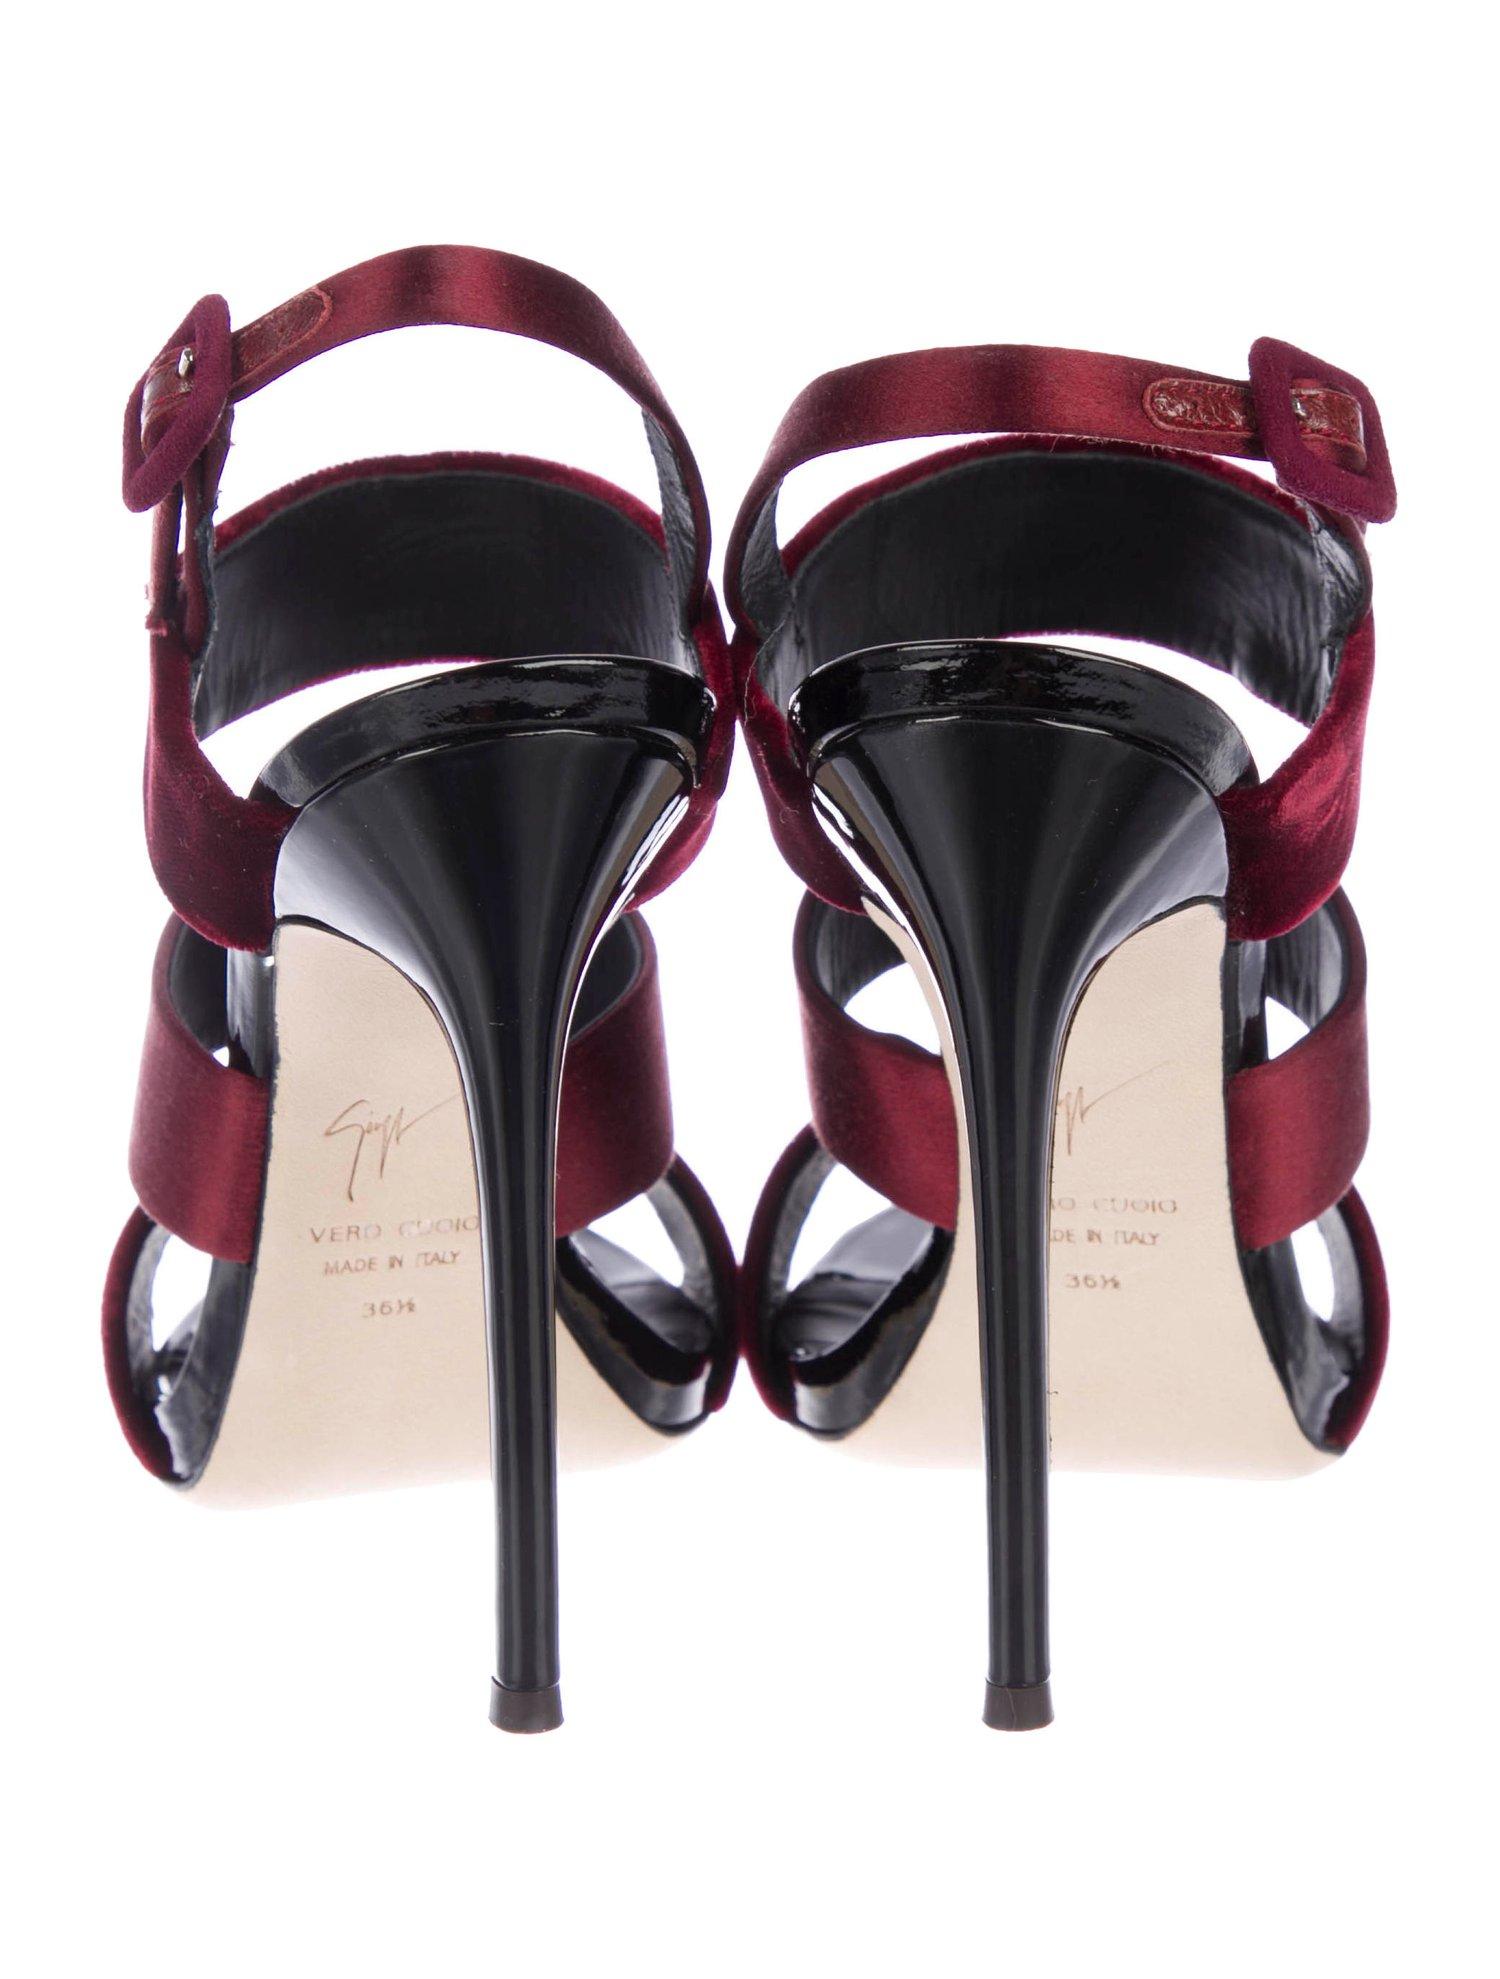 Women's Giuseppe Zanotti NEW Velvet Burgundy Evening Sandals Heels in Box